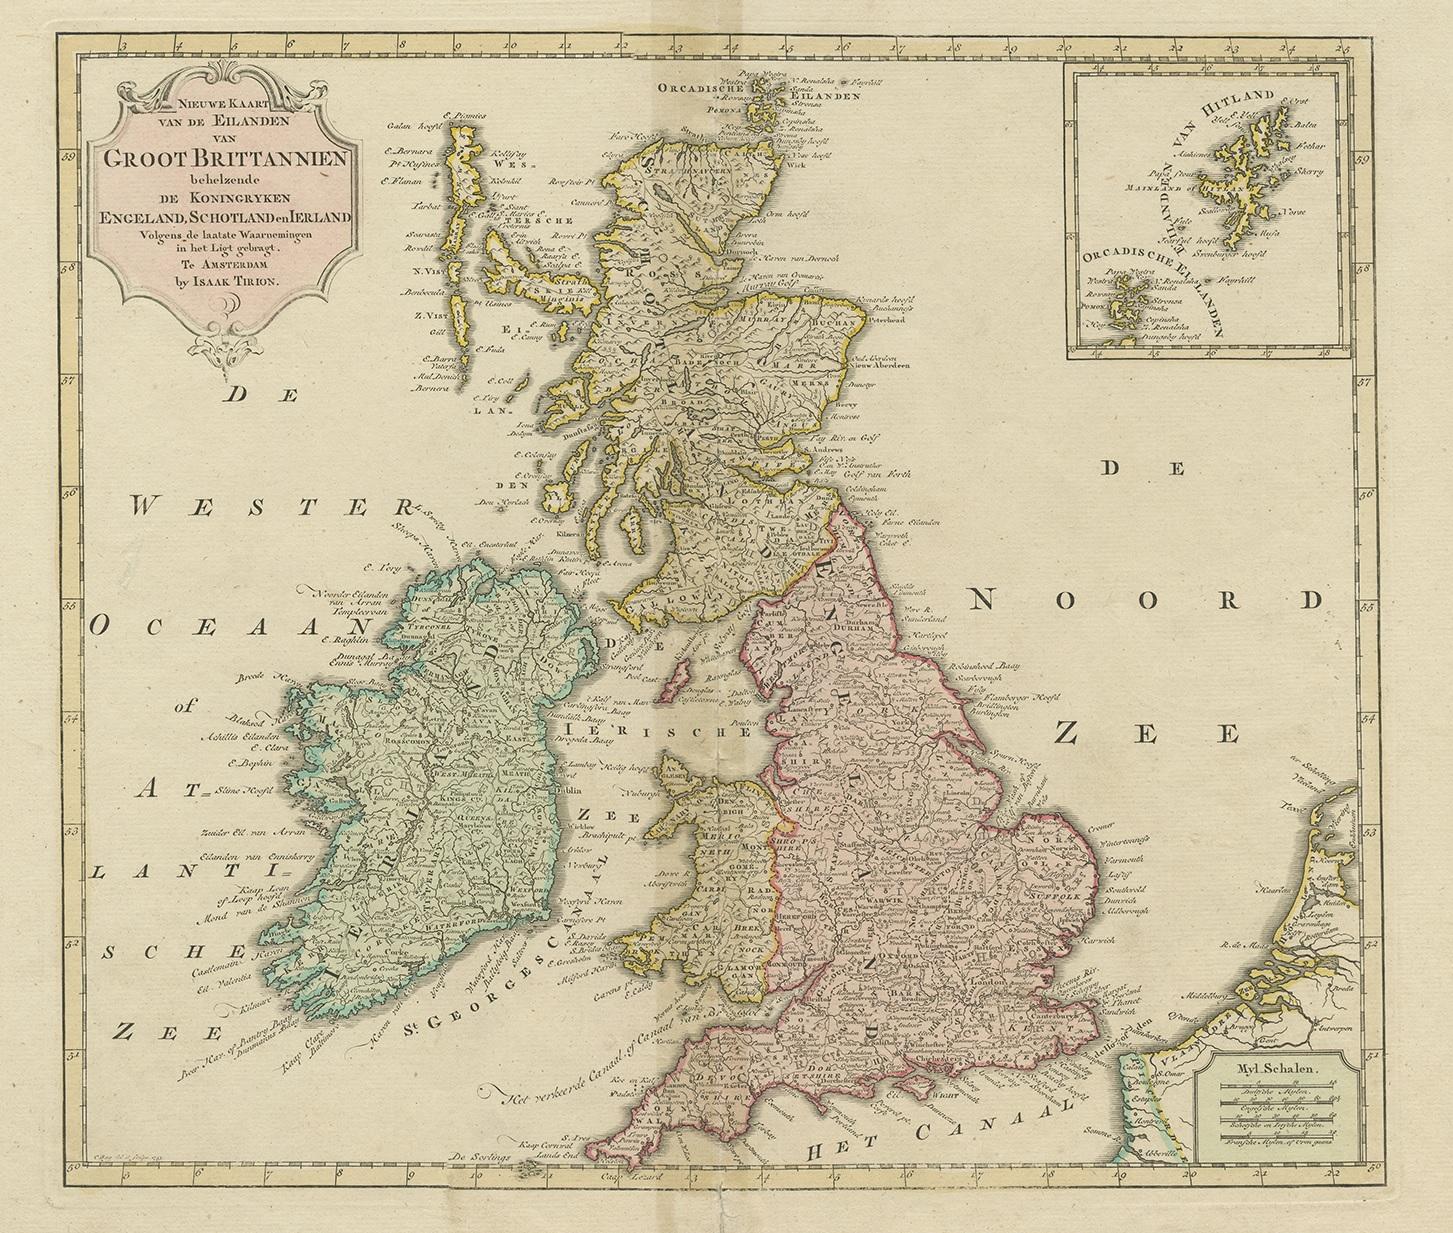 Antique map titled 'Nieuwe Kaart van de Eilanden van Groot Brittannien Behelzende de Koningryken Engeland, Schotland en Ierland (…)'. Attractive map showing England and Ireland (United Kingdom). With an inset map of the Shetland islands.